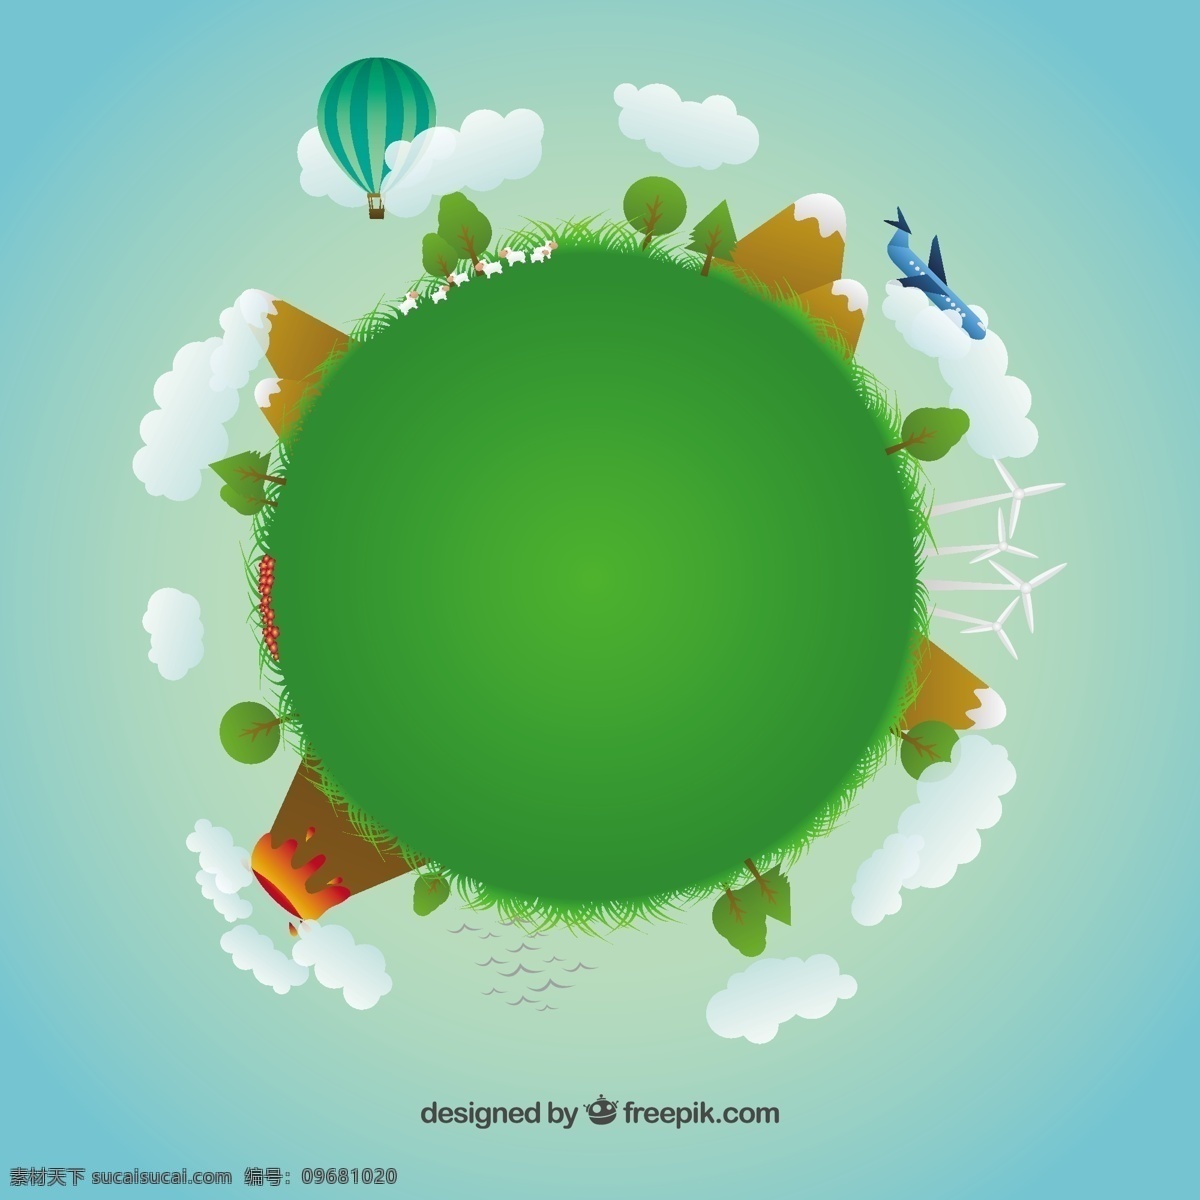 插图 行星 地球日 世界 绿色 卡通 地球 能源 回收 环境 圆形 节能